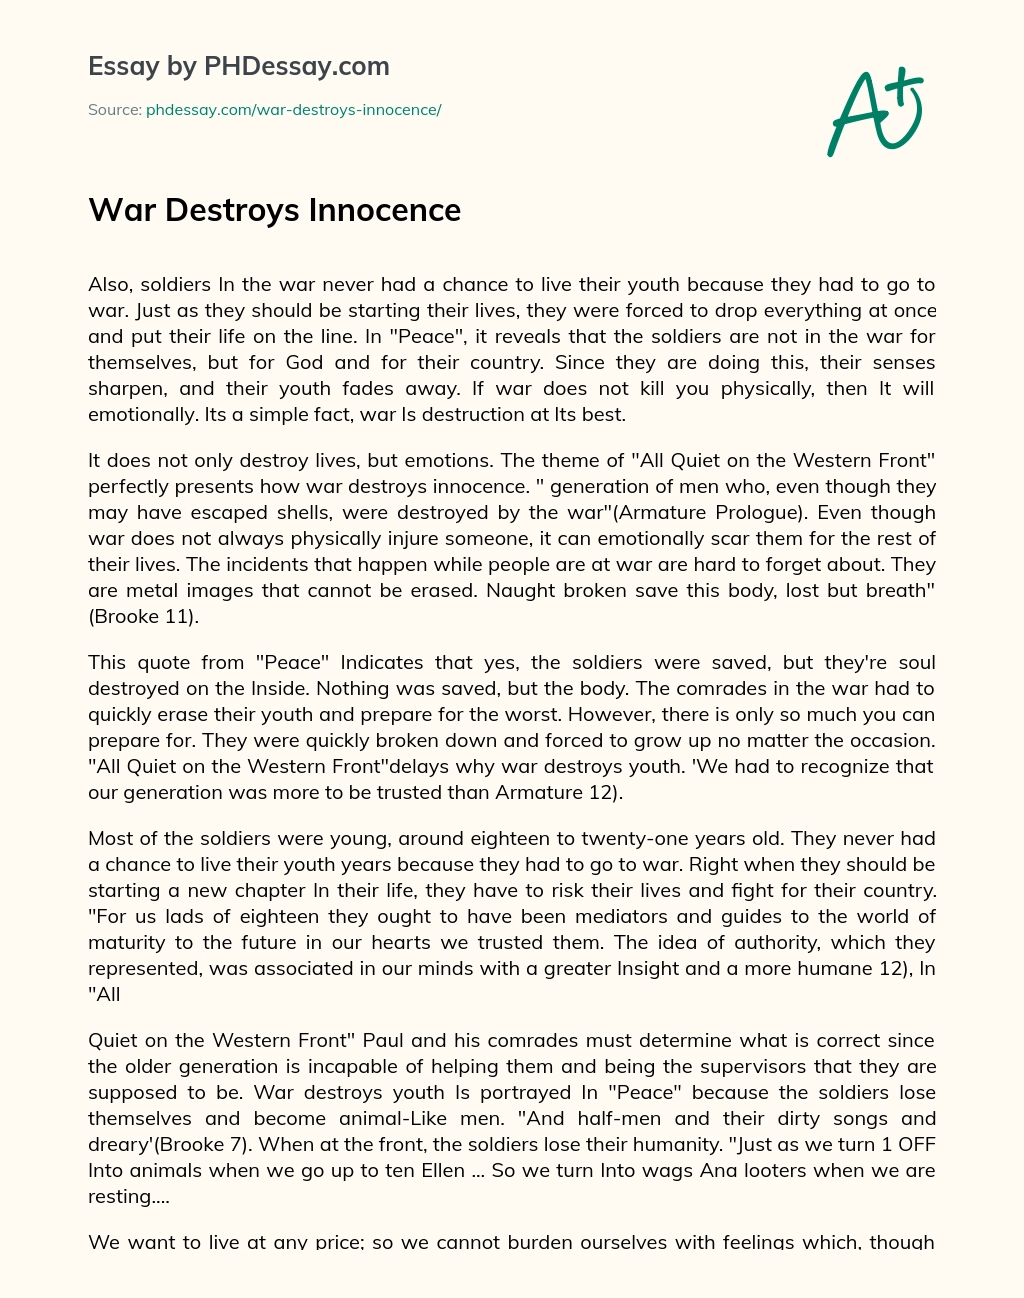 War Destroys Innocence essay